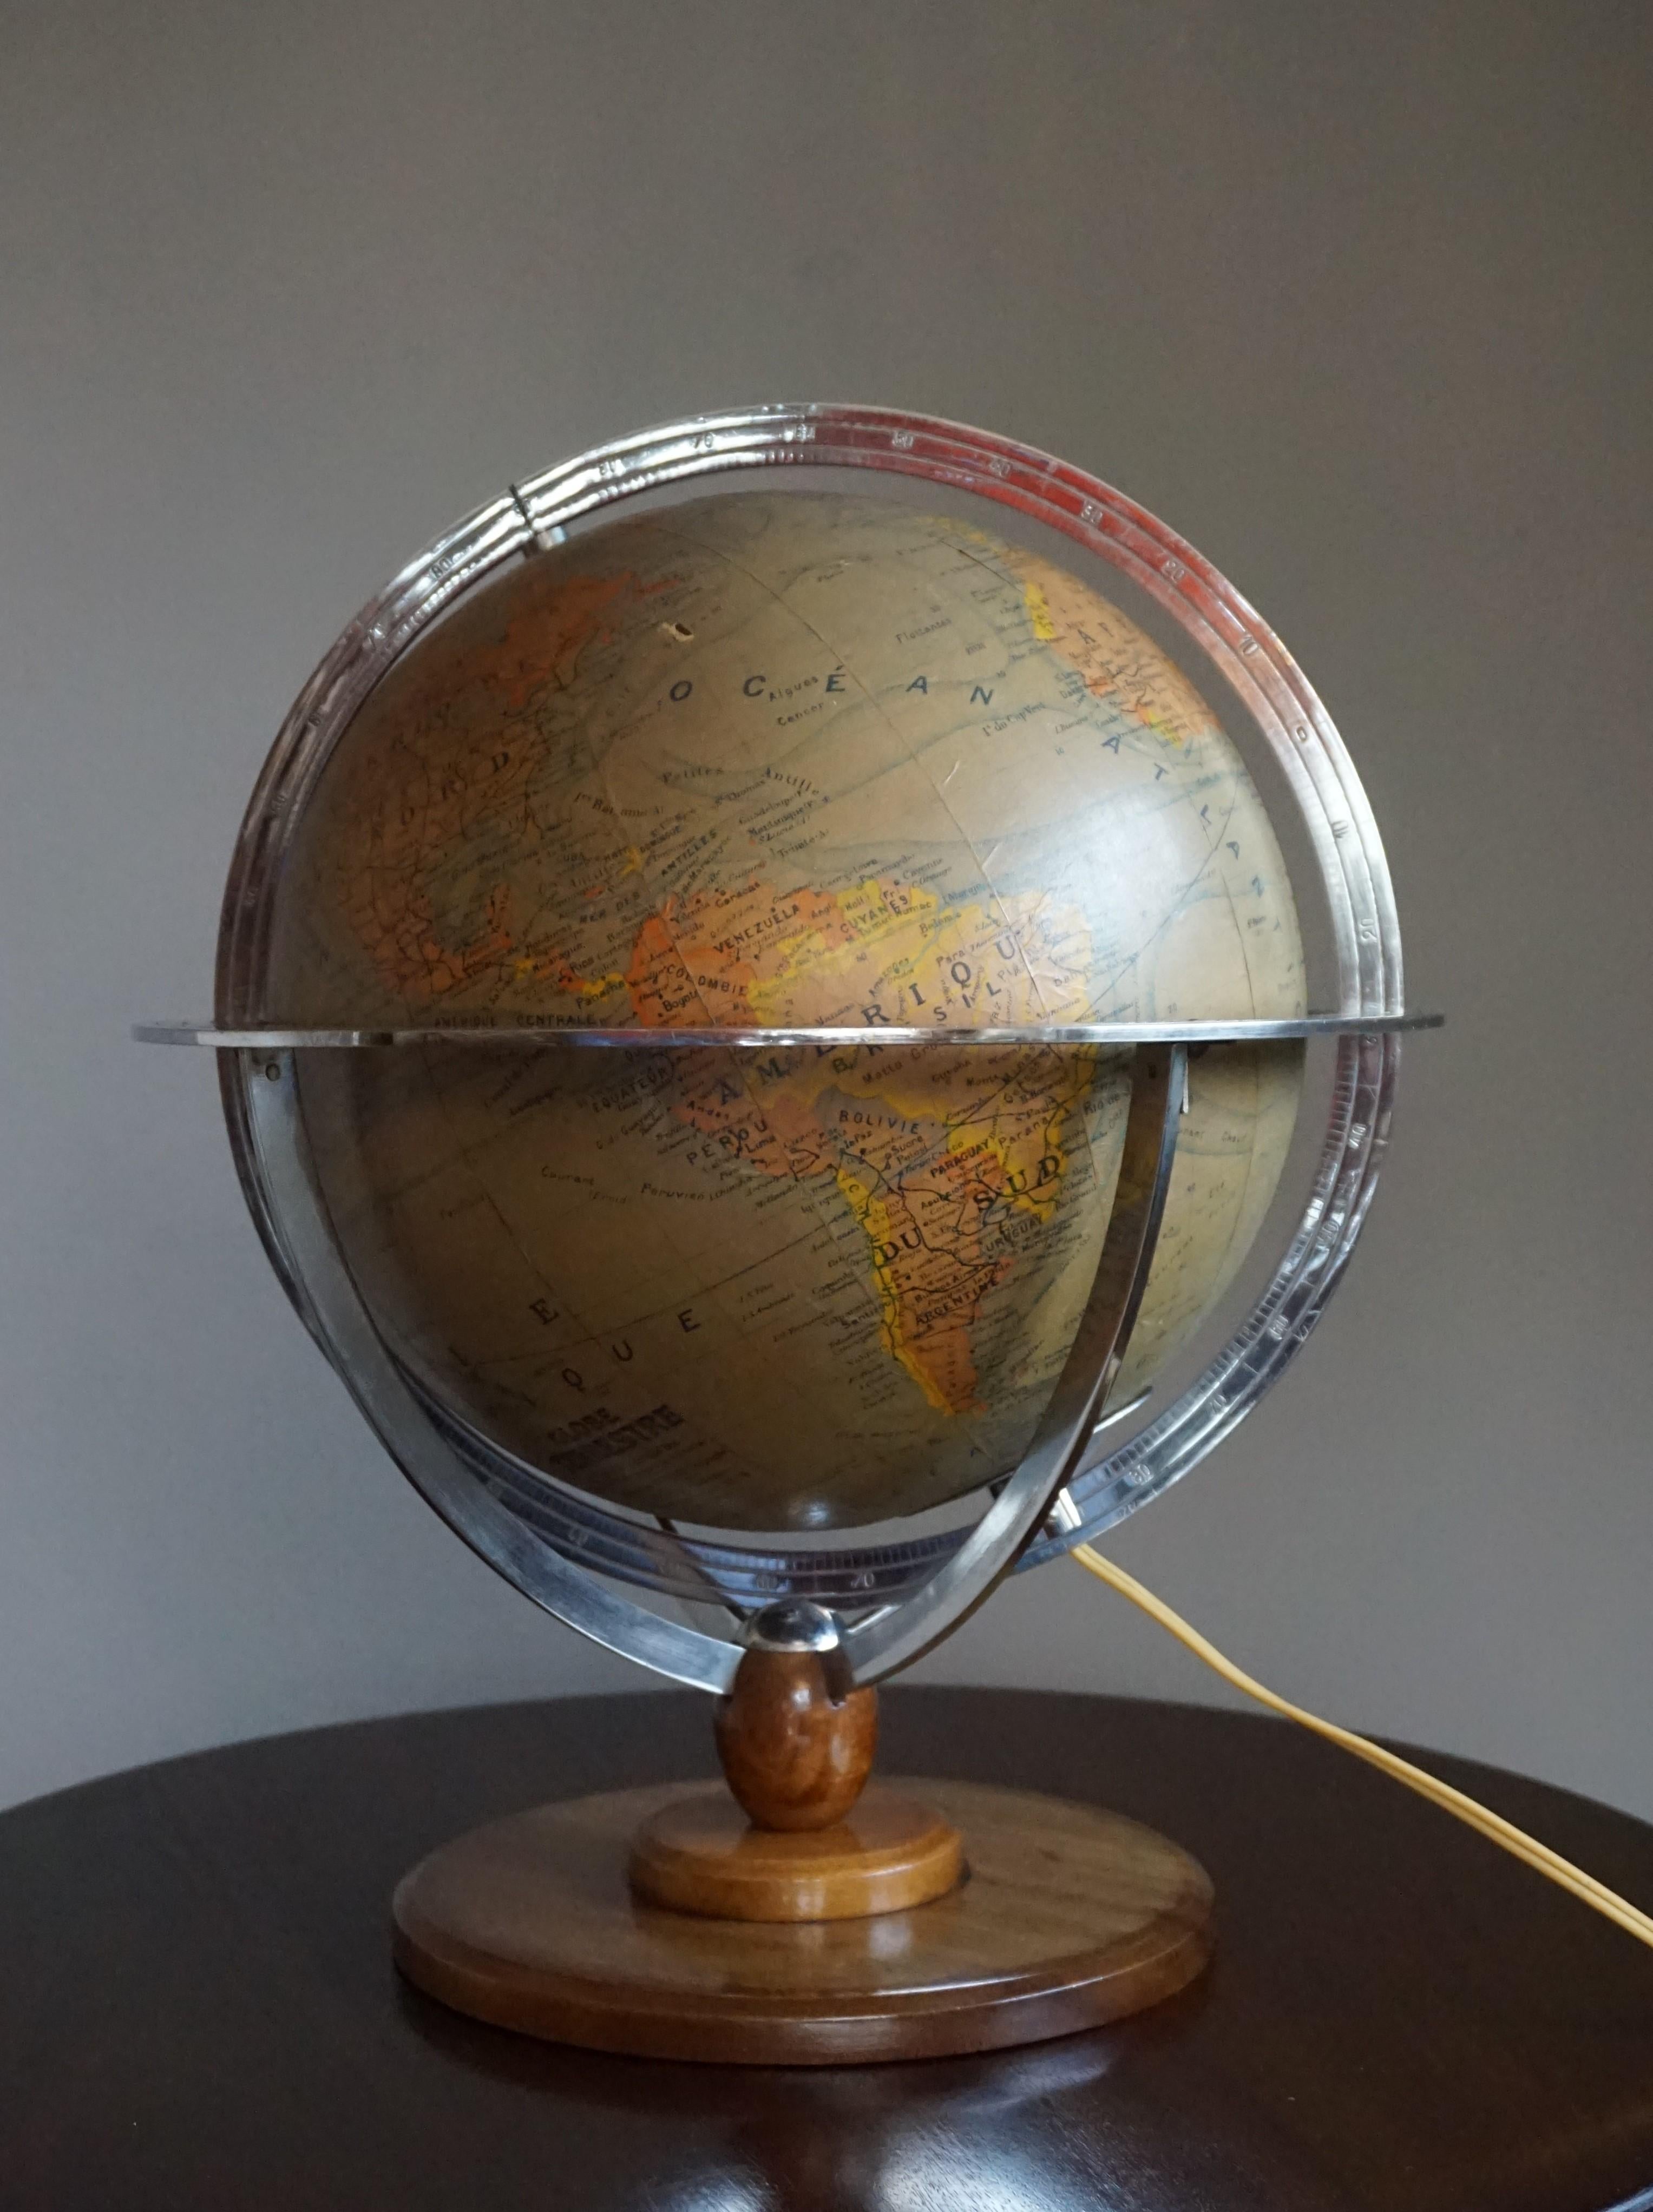 Globe de bureau de qualité, en métal et en verre, sur une base en bois.

Si vous êtes à la recherche d'objets élégants et de belle qualité pour améliorer votre intérieur (que ce soit à la maison ou au bureau), alors ce globe parisien pourrait être